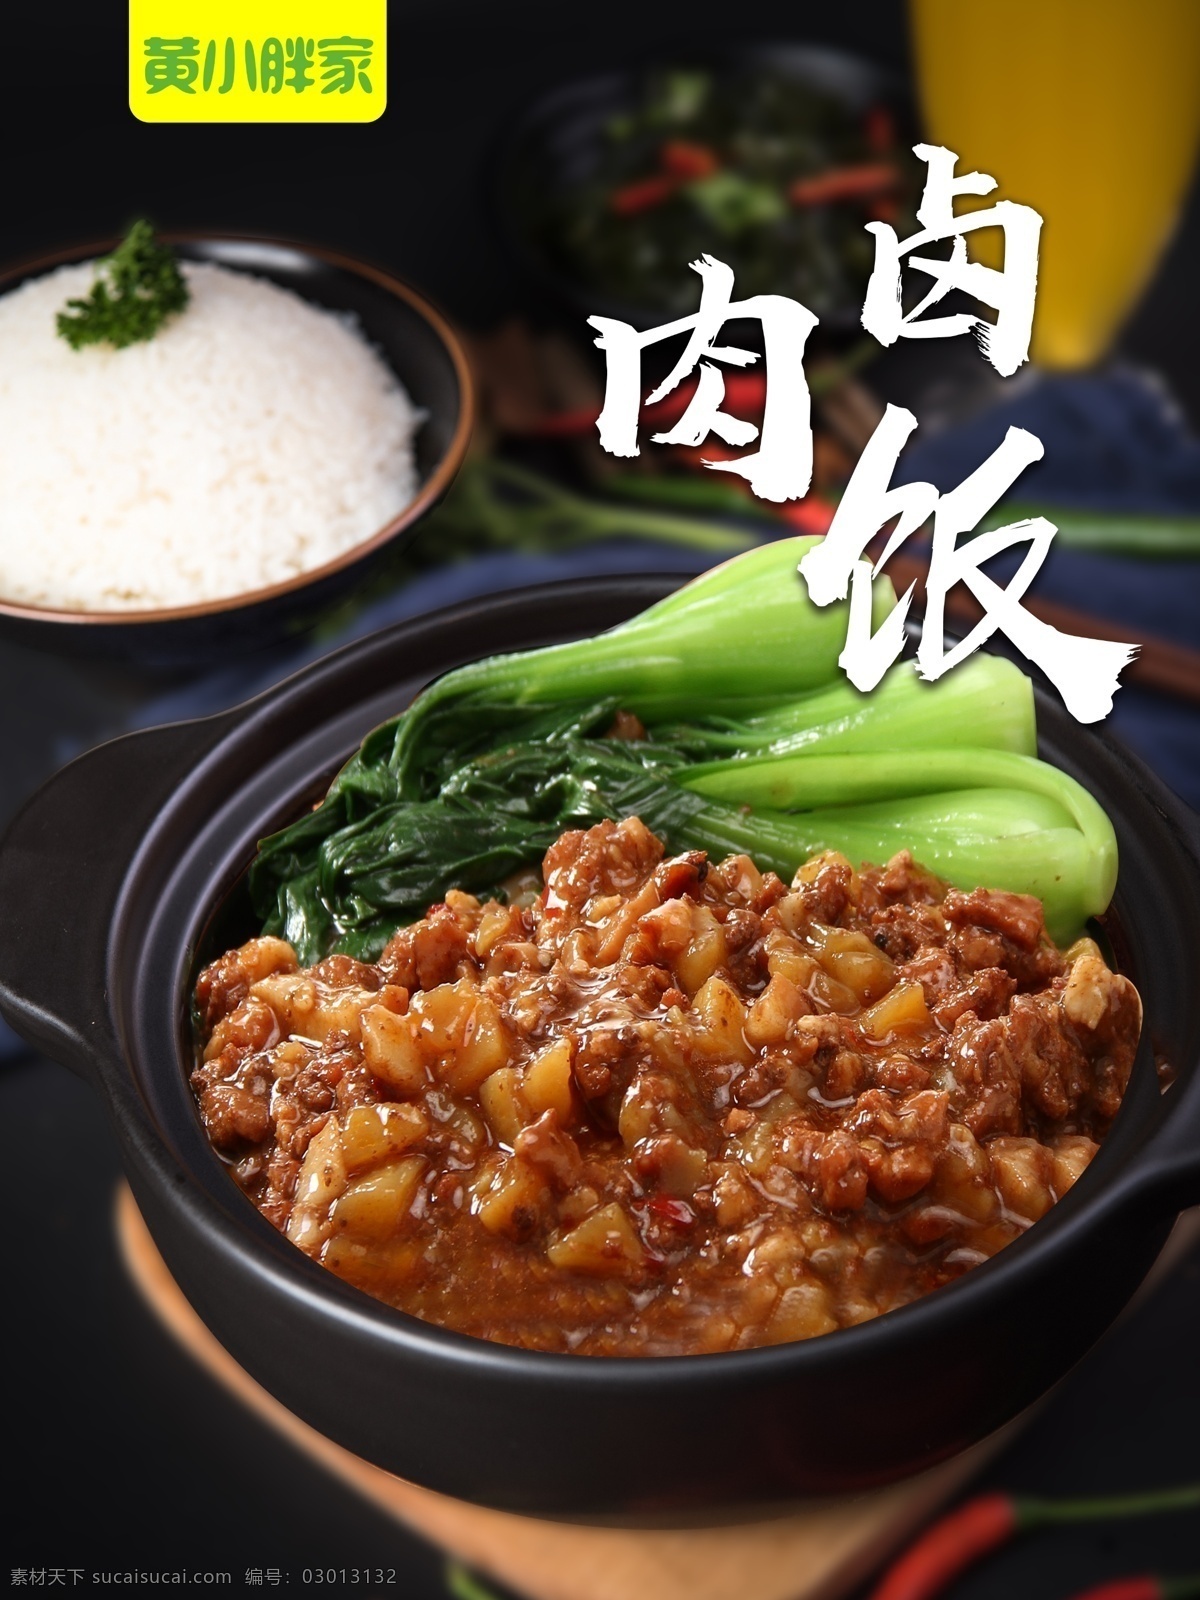 台湾卤肉饭 卤肉饭 砂锅 中餐 健康 简洁